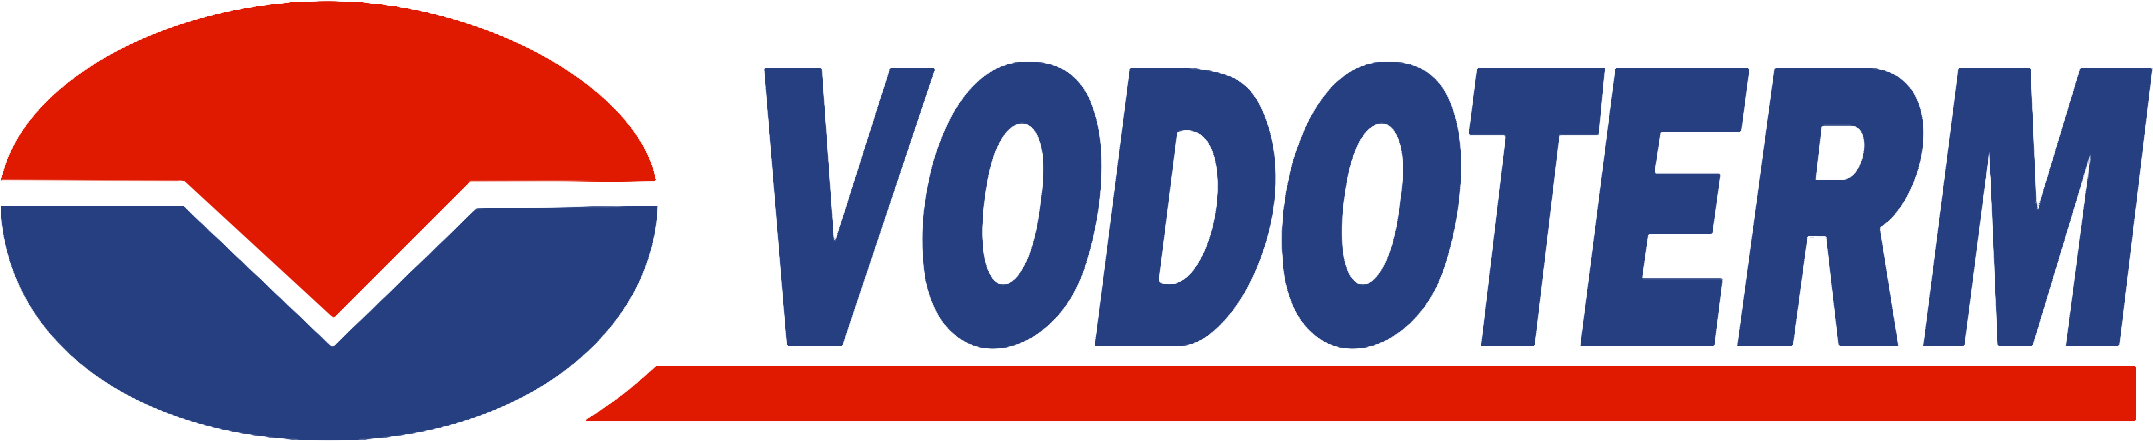 Vodoterm logo